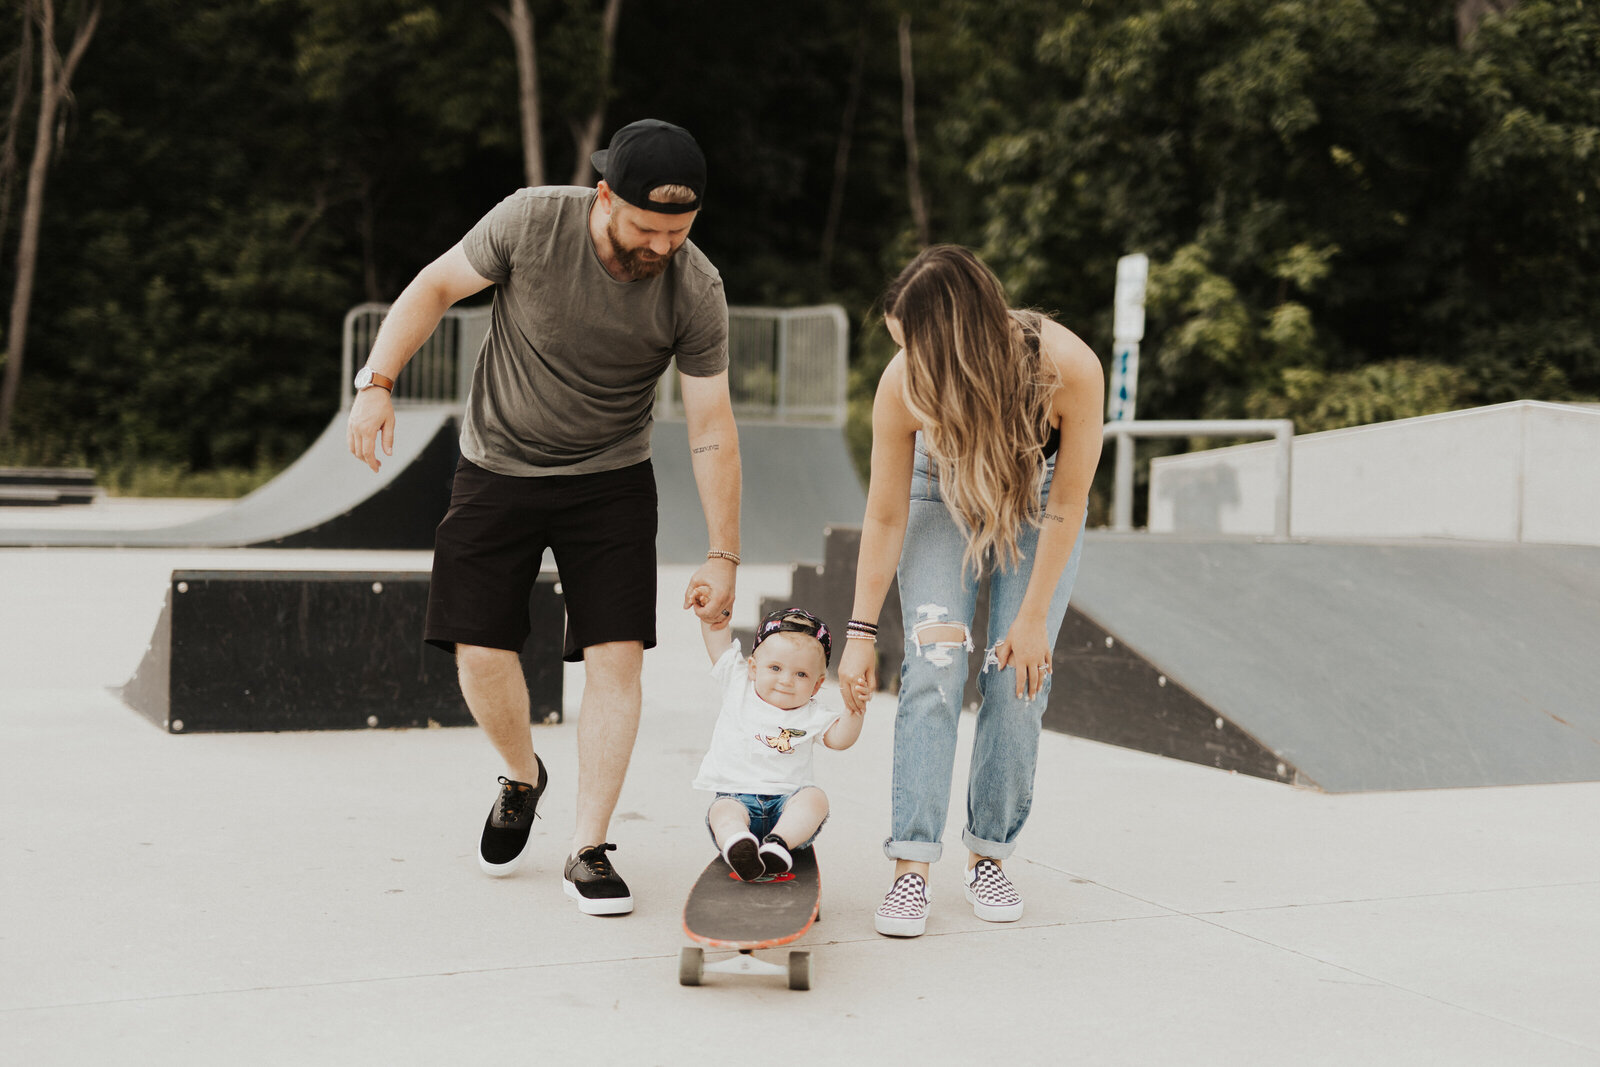 Jessica-Douglas-Photography-Toronto-Photographer-Skate-Family-12